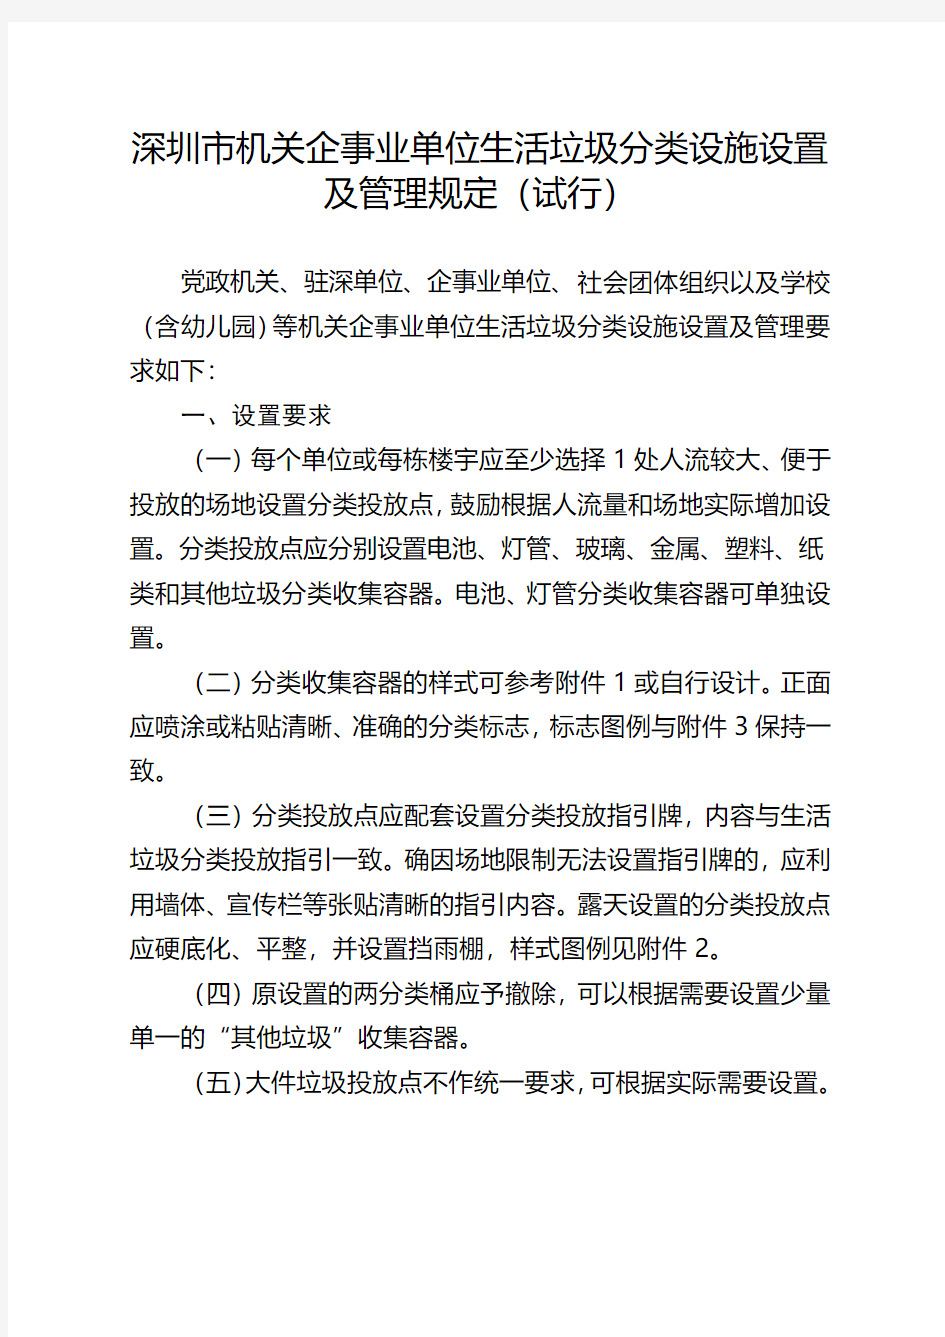 深圳市机关企事业单位生活垃圾分类设施设置及管理规定试